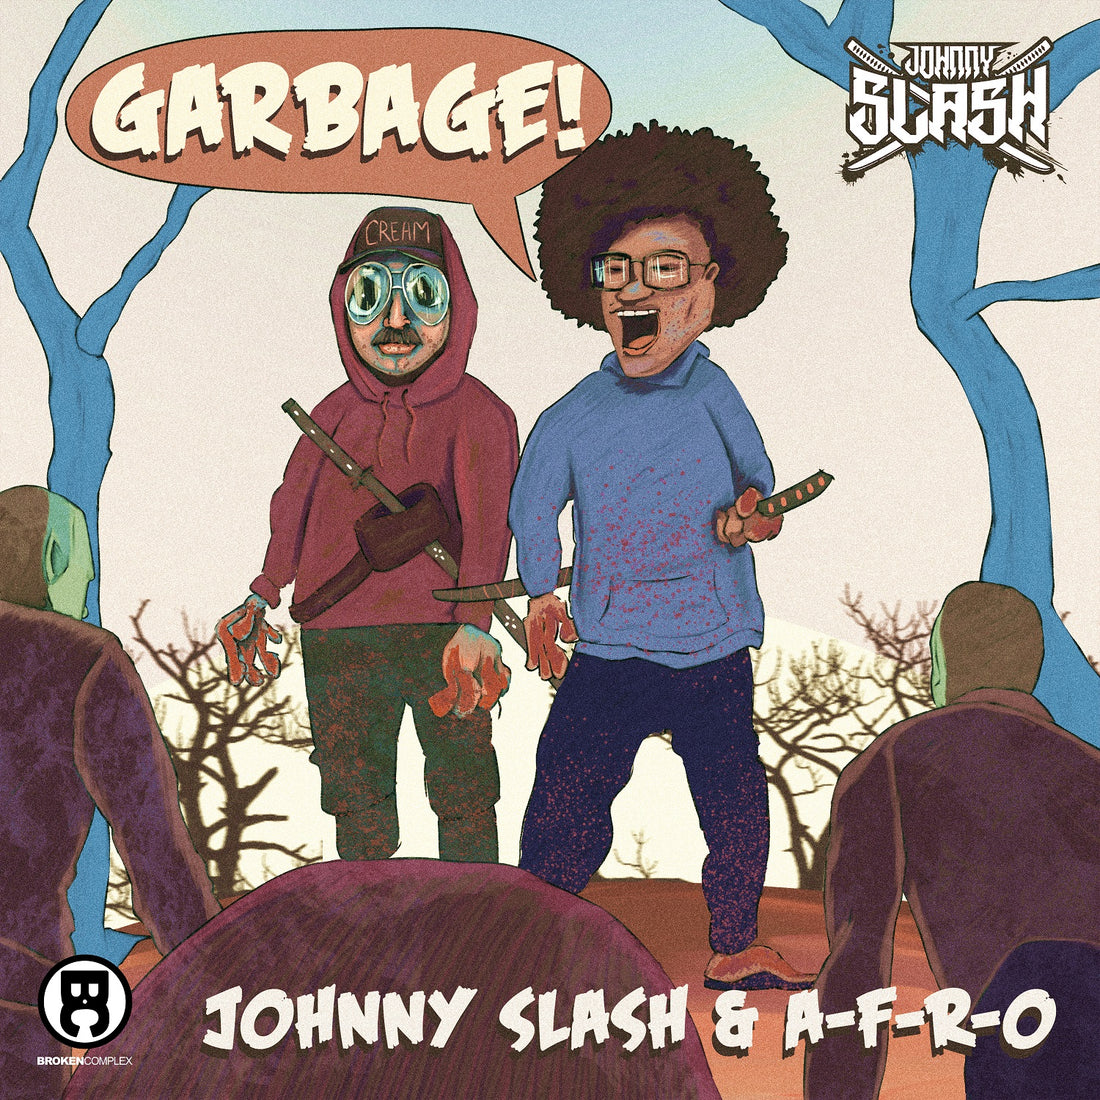 New Single: Johnny Slash & A-F-R-O - Garbage